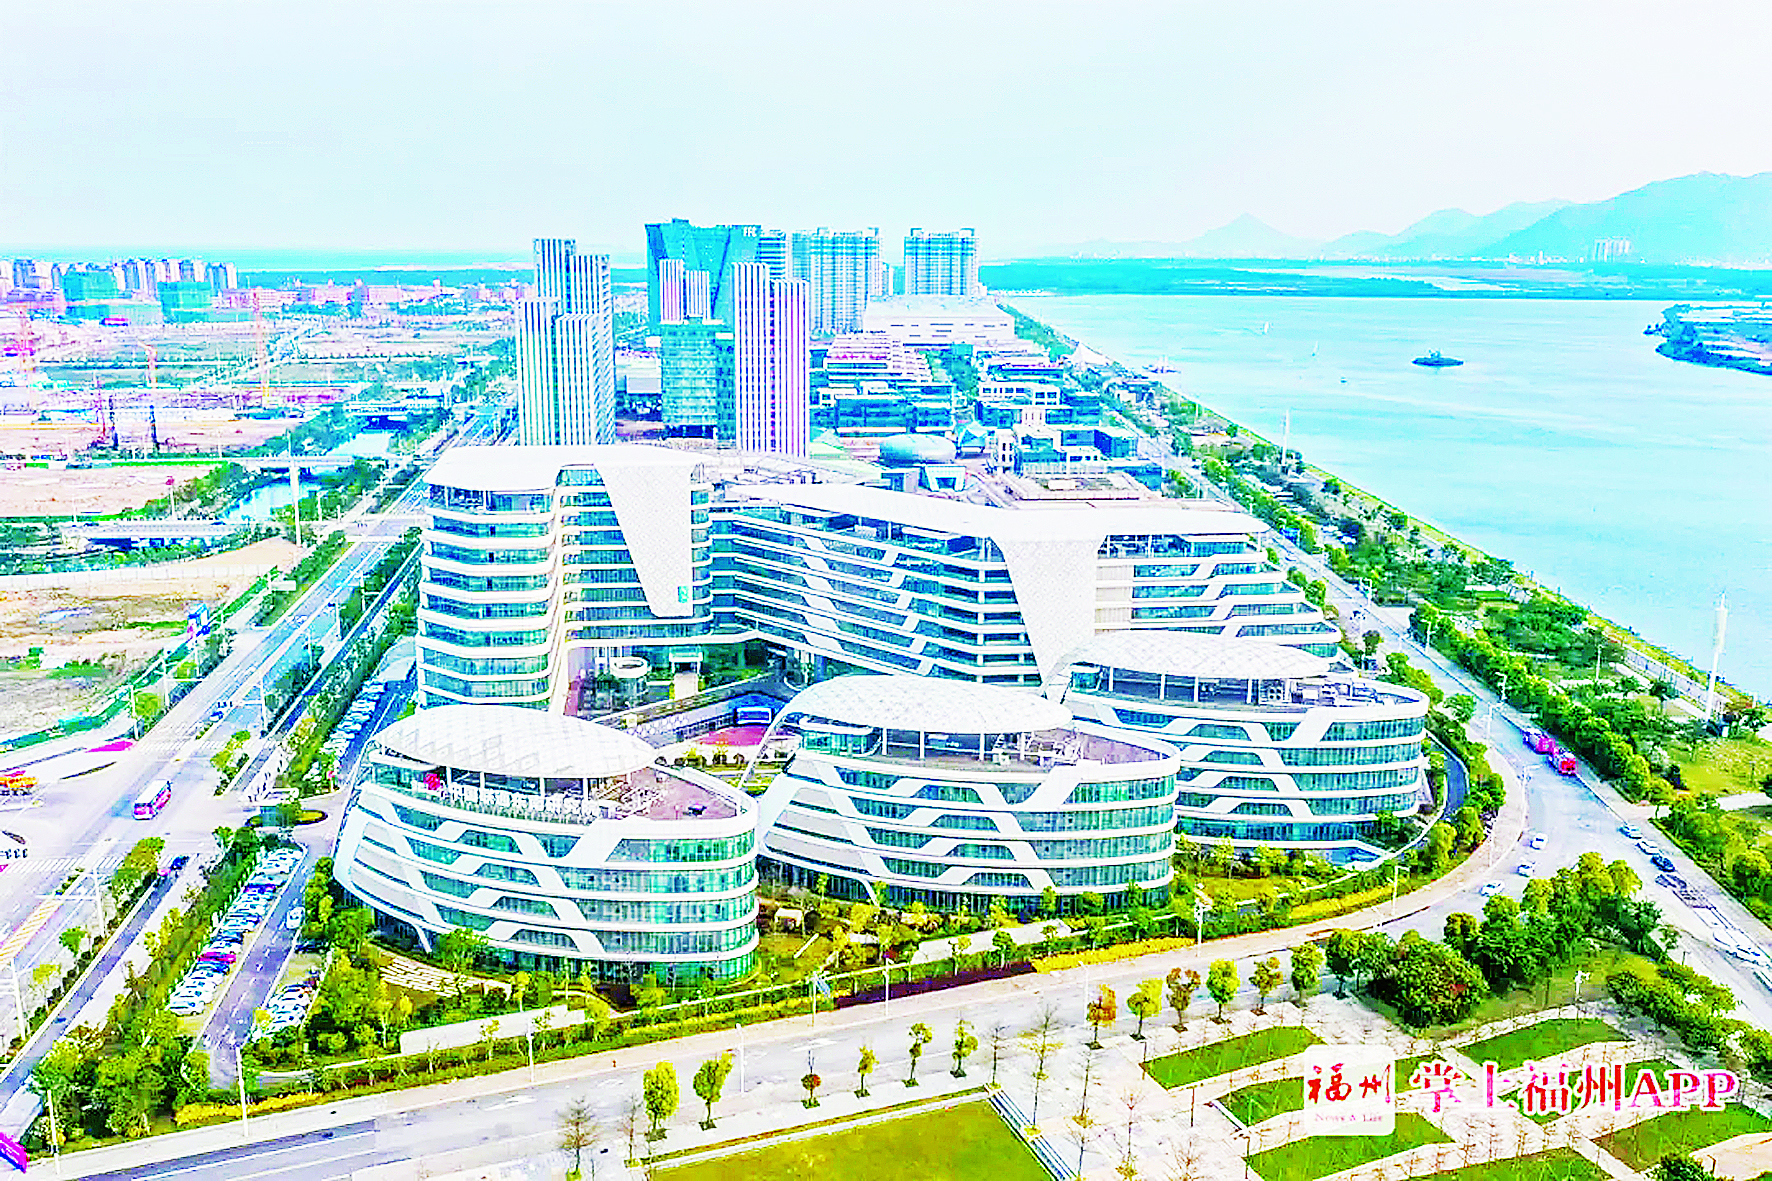 中国东南大数据产业园建设进展迅速  12栋封顶  研发楼连点成片